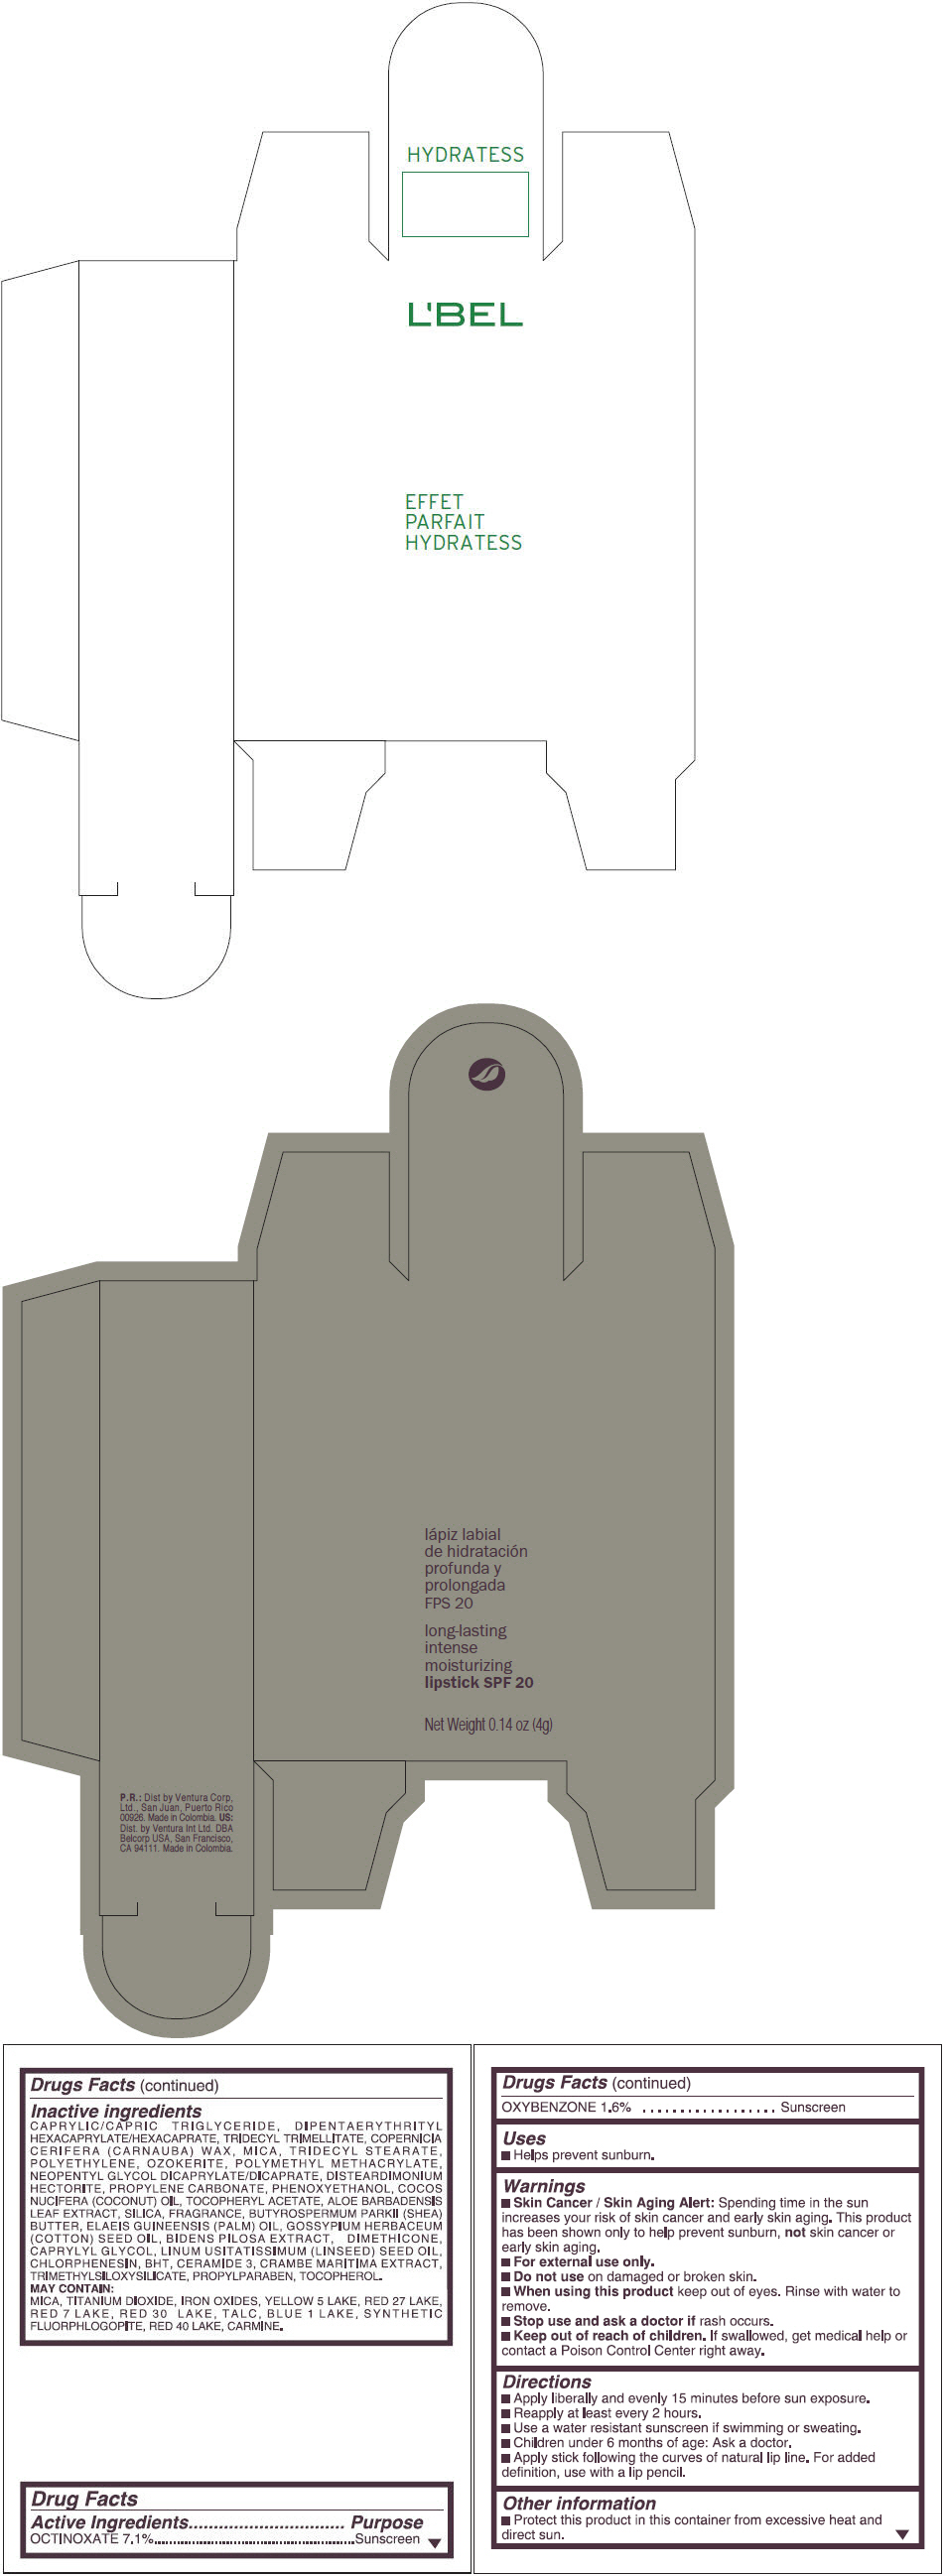 PRINCIPAL DISPLAY PANEL - 4 g Tube Box - (ROMANCE) - PINK